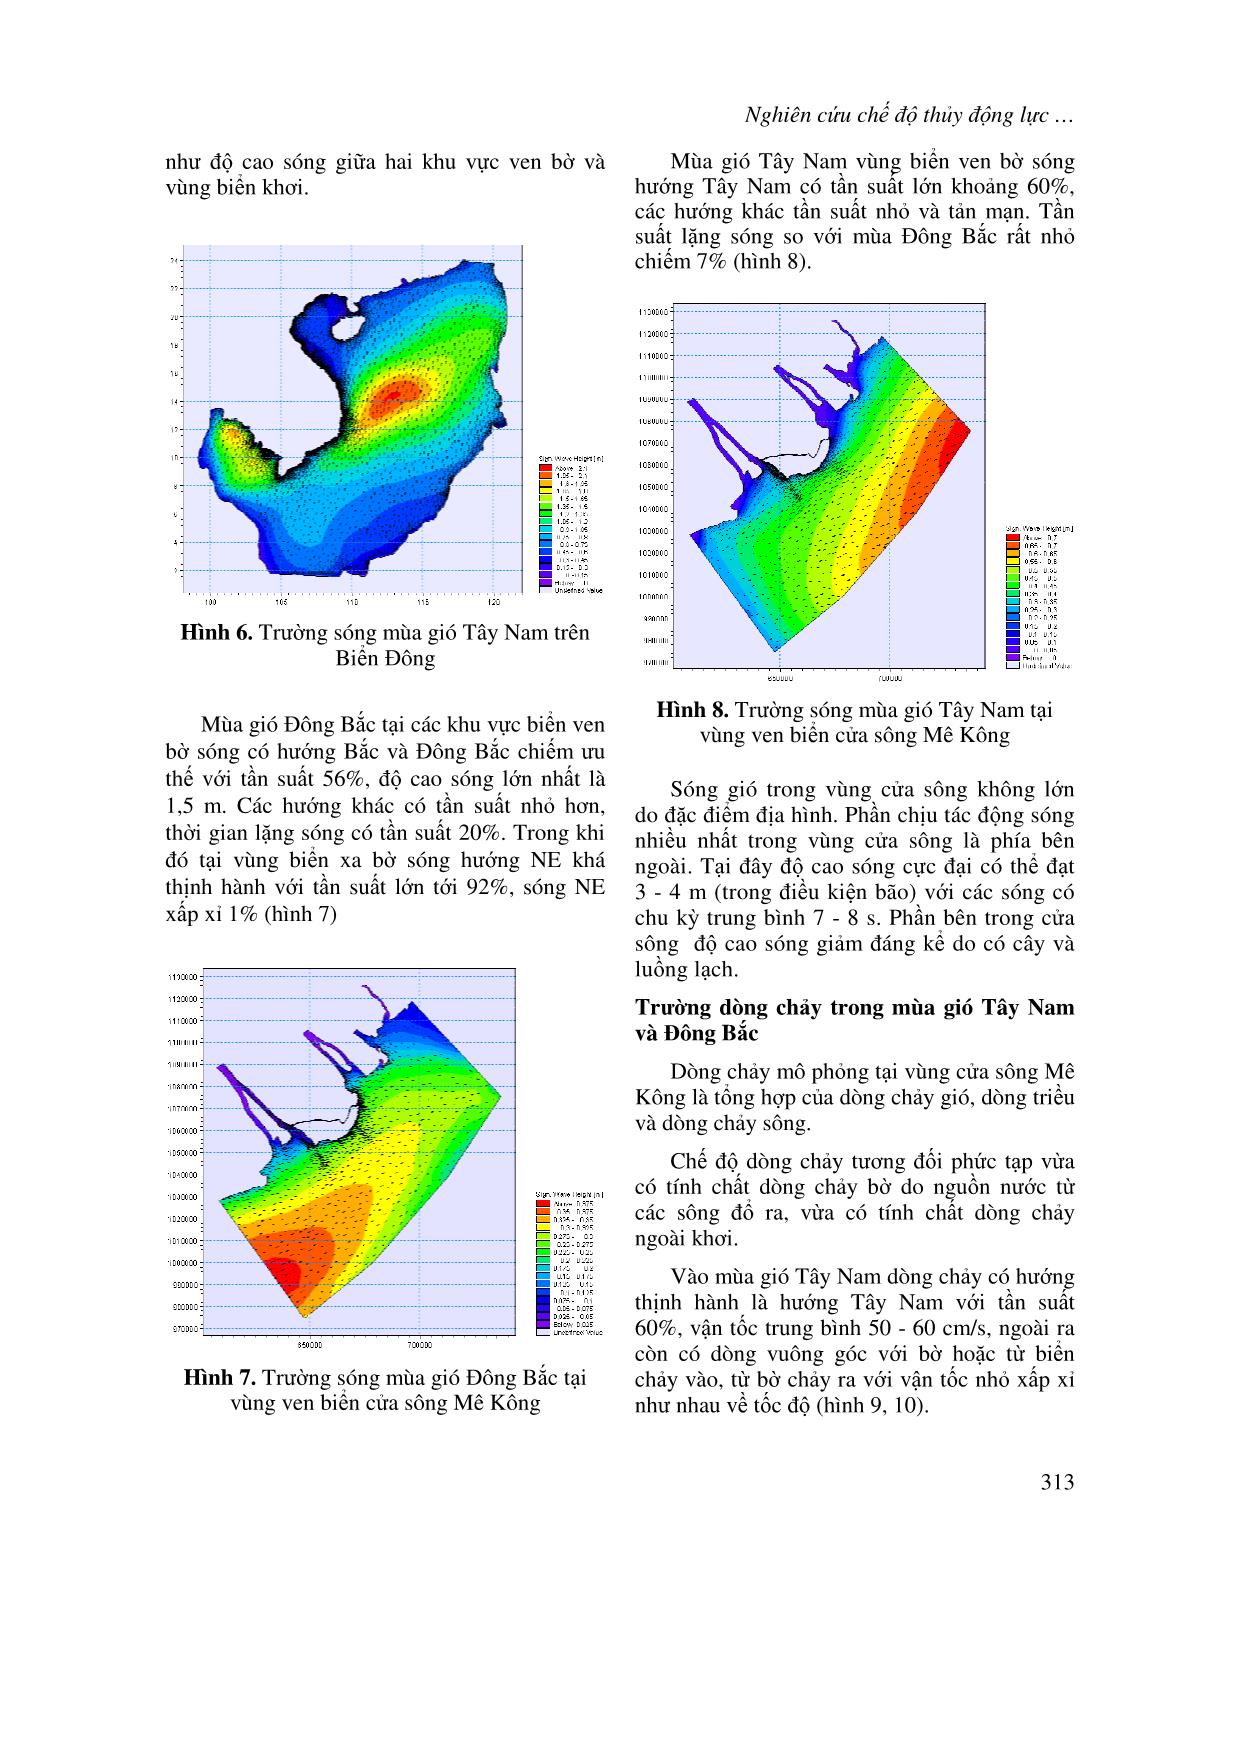 Nghiên cứu chế độ thủy động lực tại vùng biển ven bờ cửa sông Mê Kông trang 4